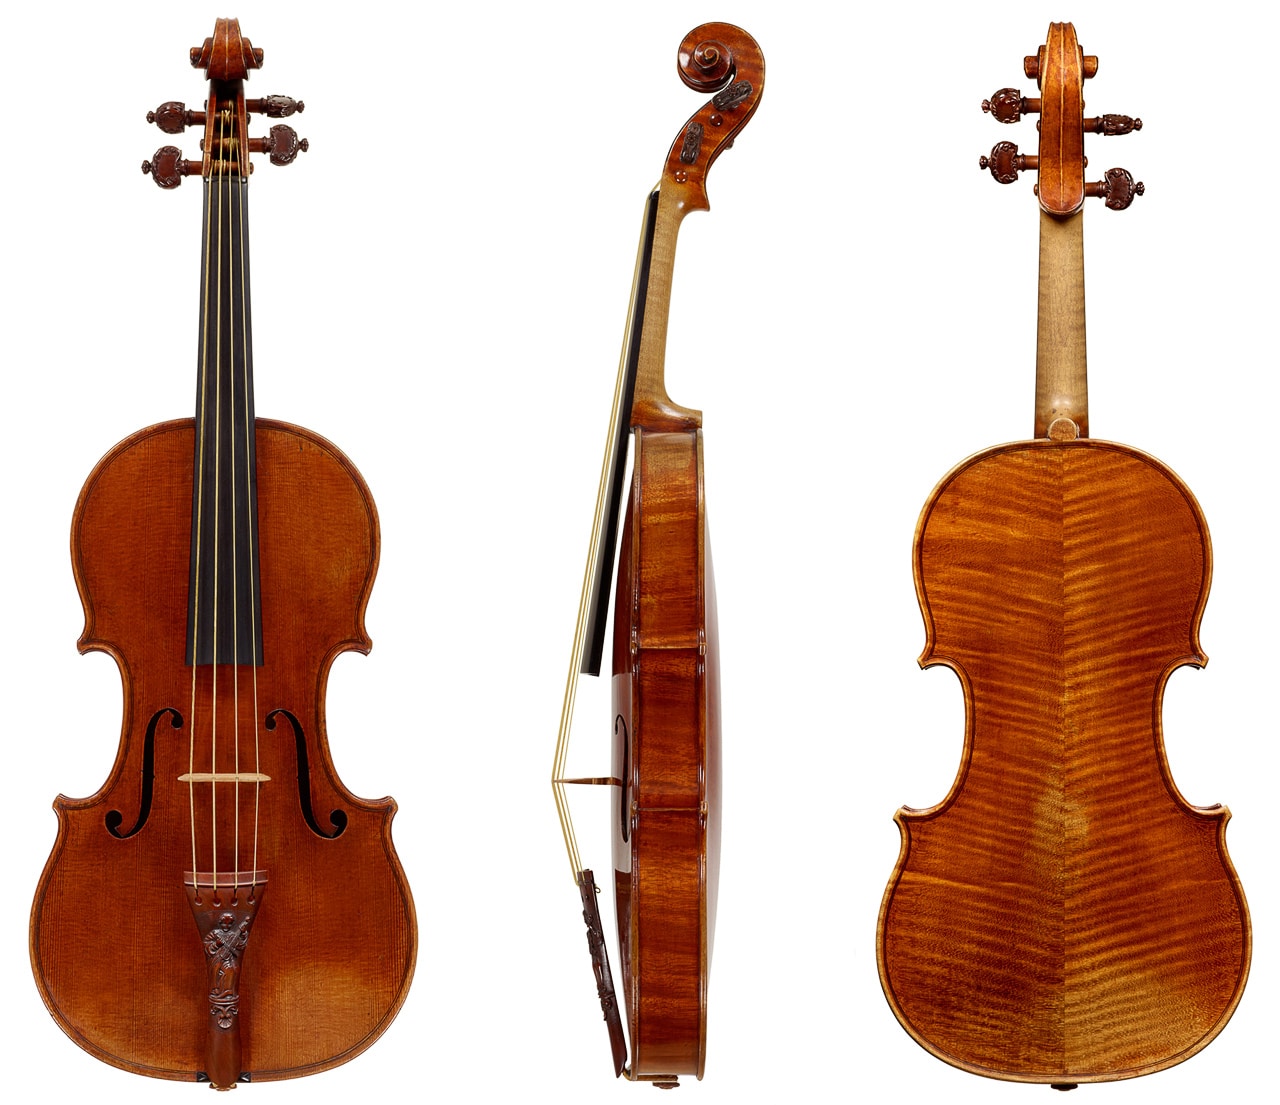 Violon baroque - Guillaume KESSLER, luthier du quatuor à Strasbourg